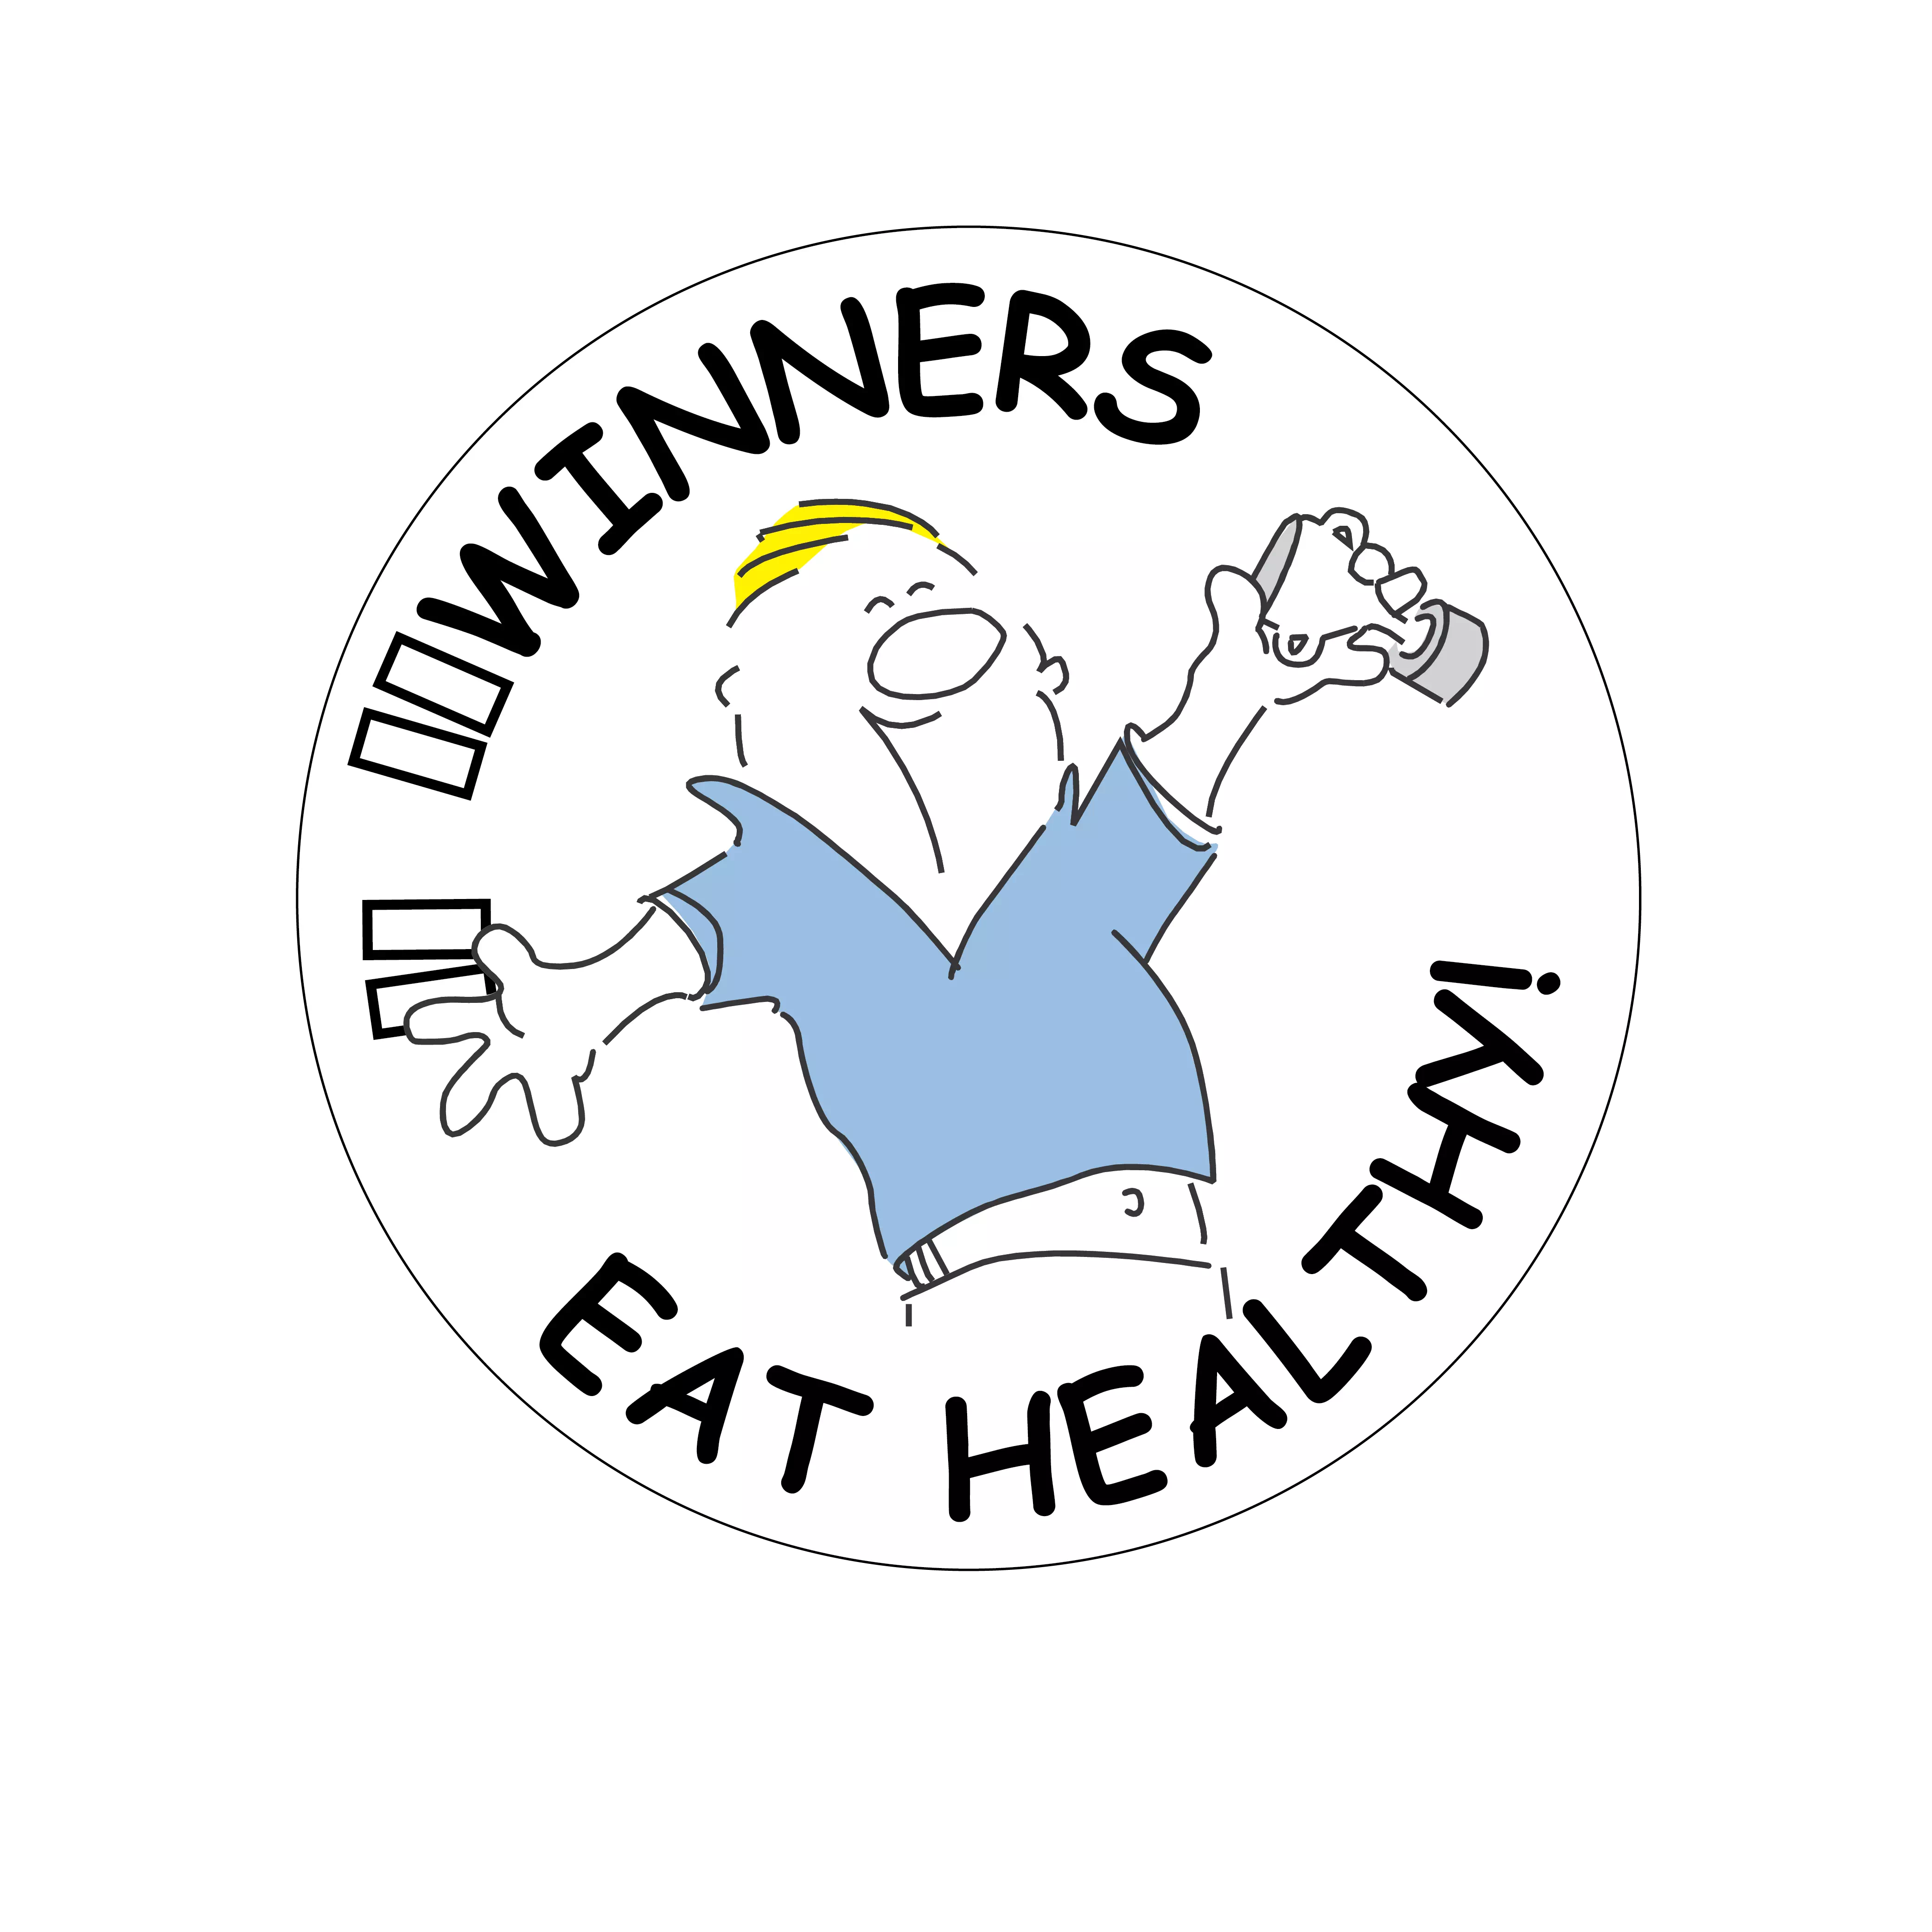 Winners Eat Healthy